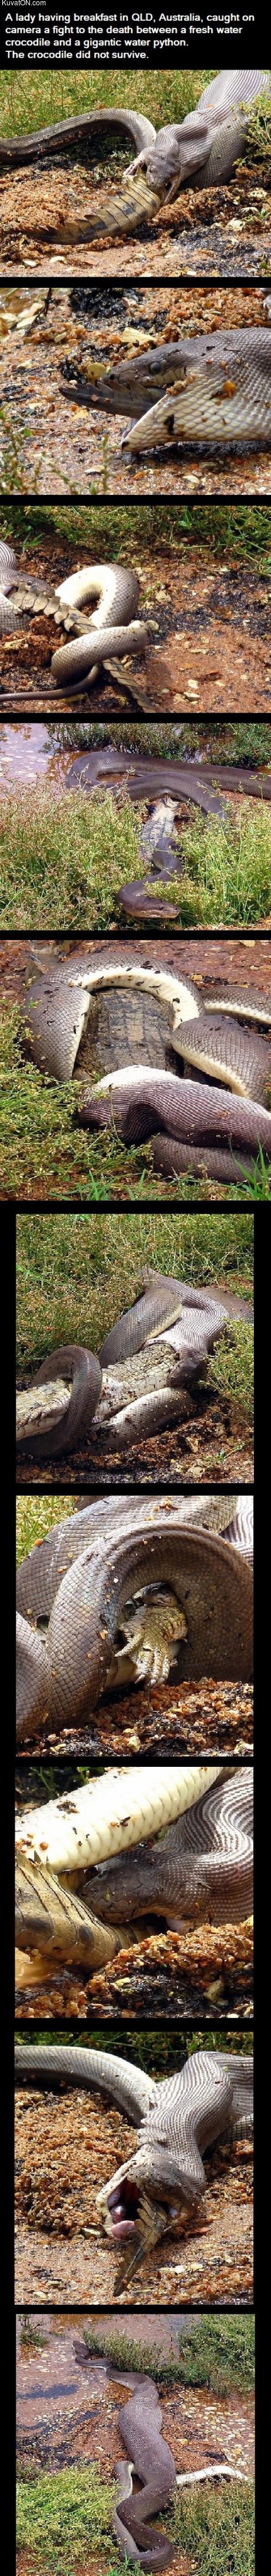 croco_vs_python.jpg